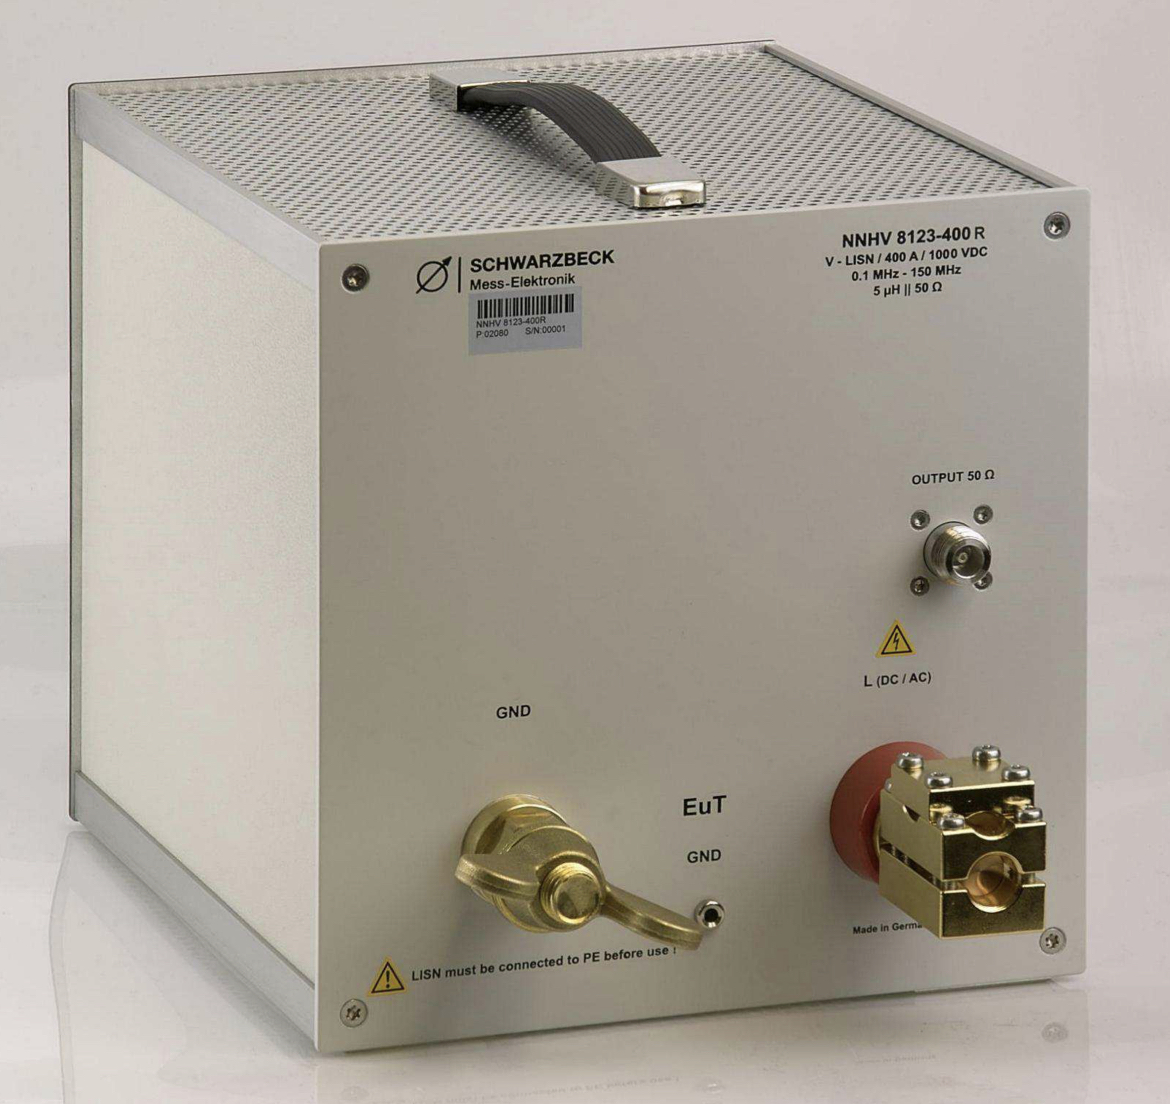 Эквивалент сети Schwarzbeck NNHV 8123-400Rс диапазоном от 100 МГц до 150 МГц